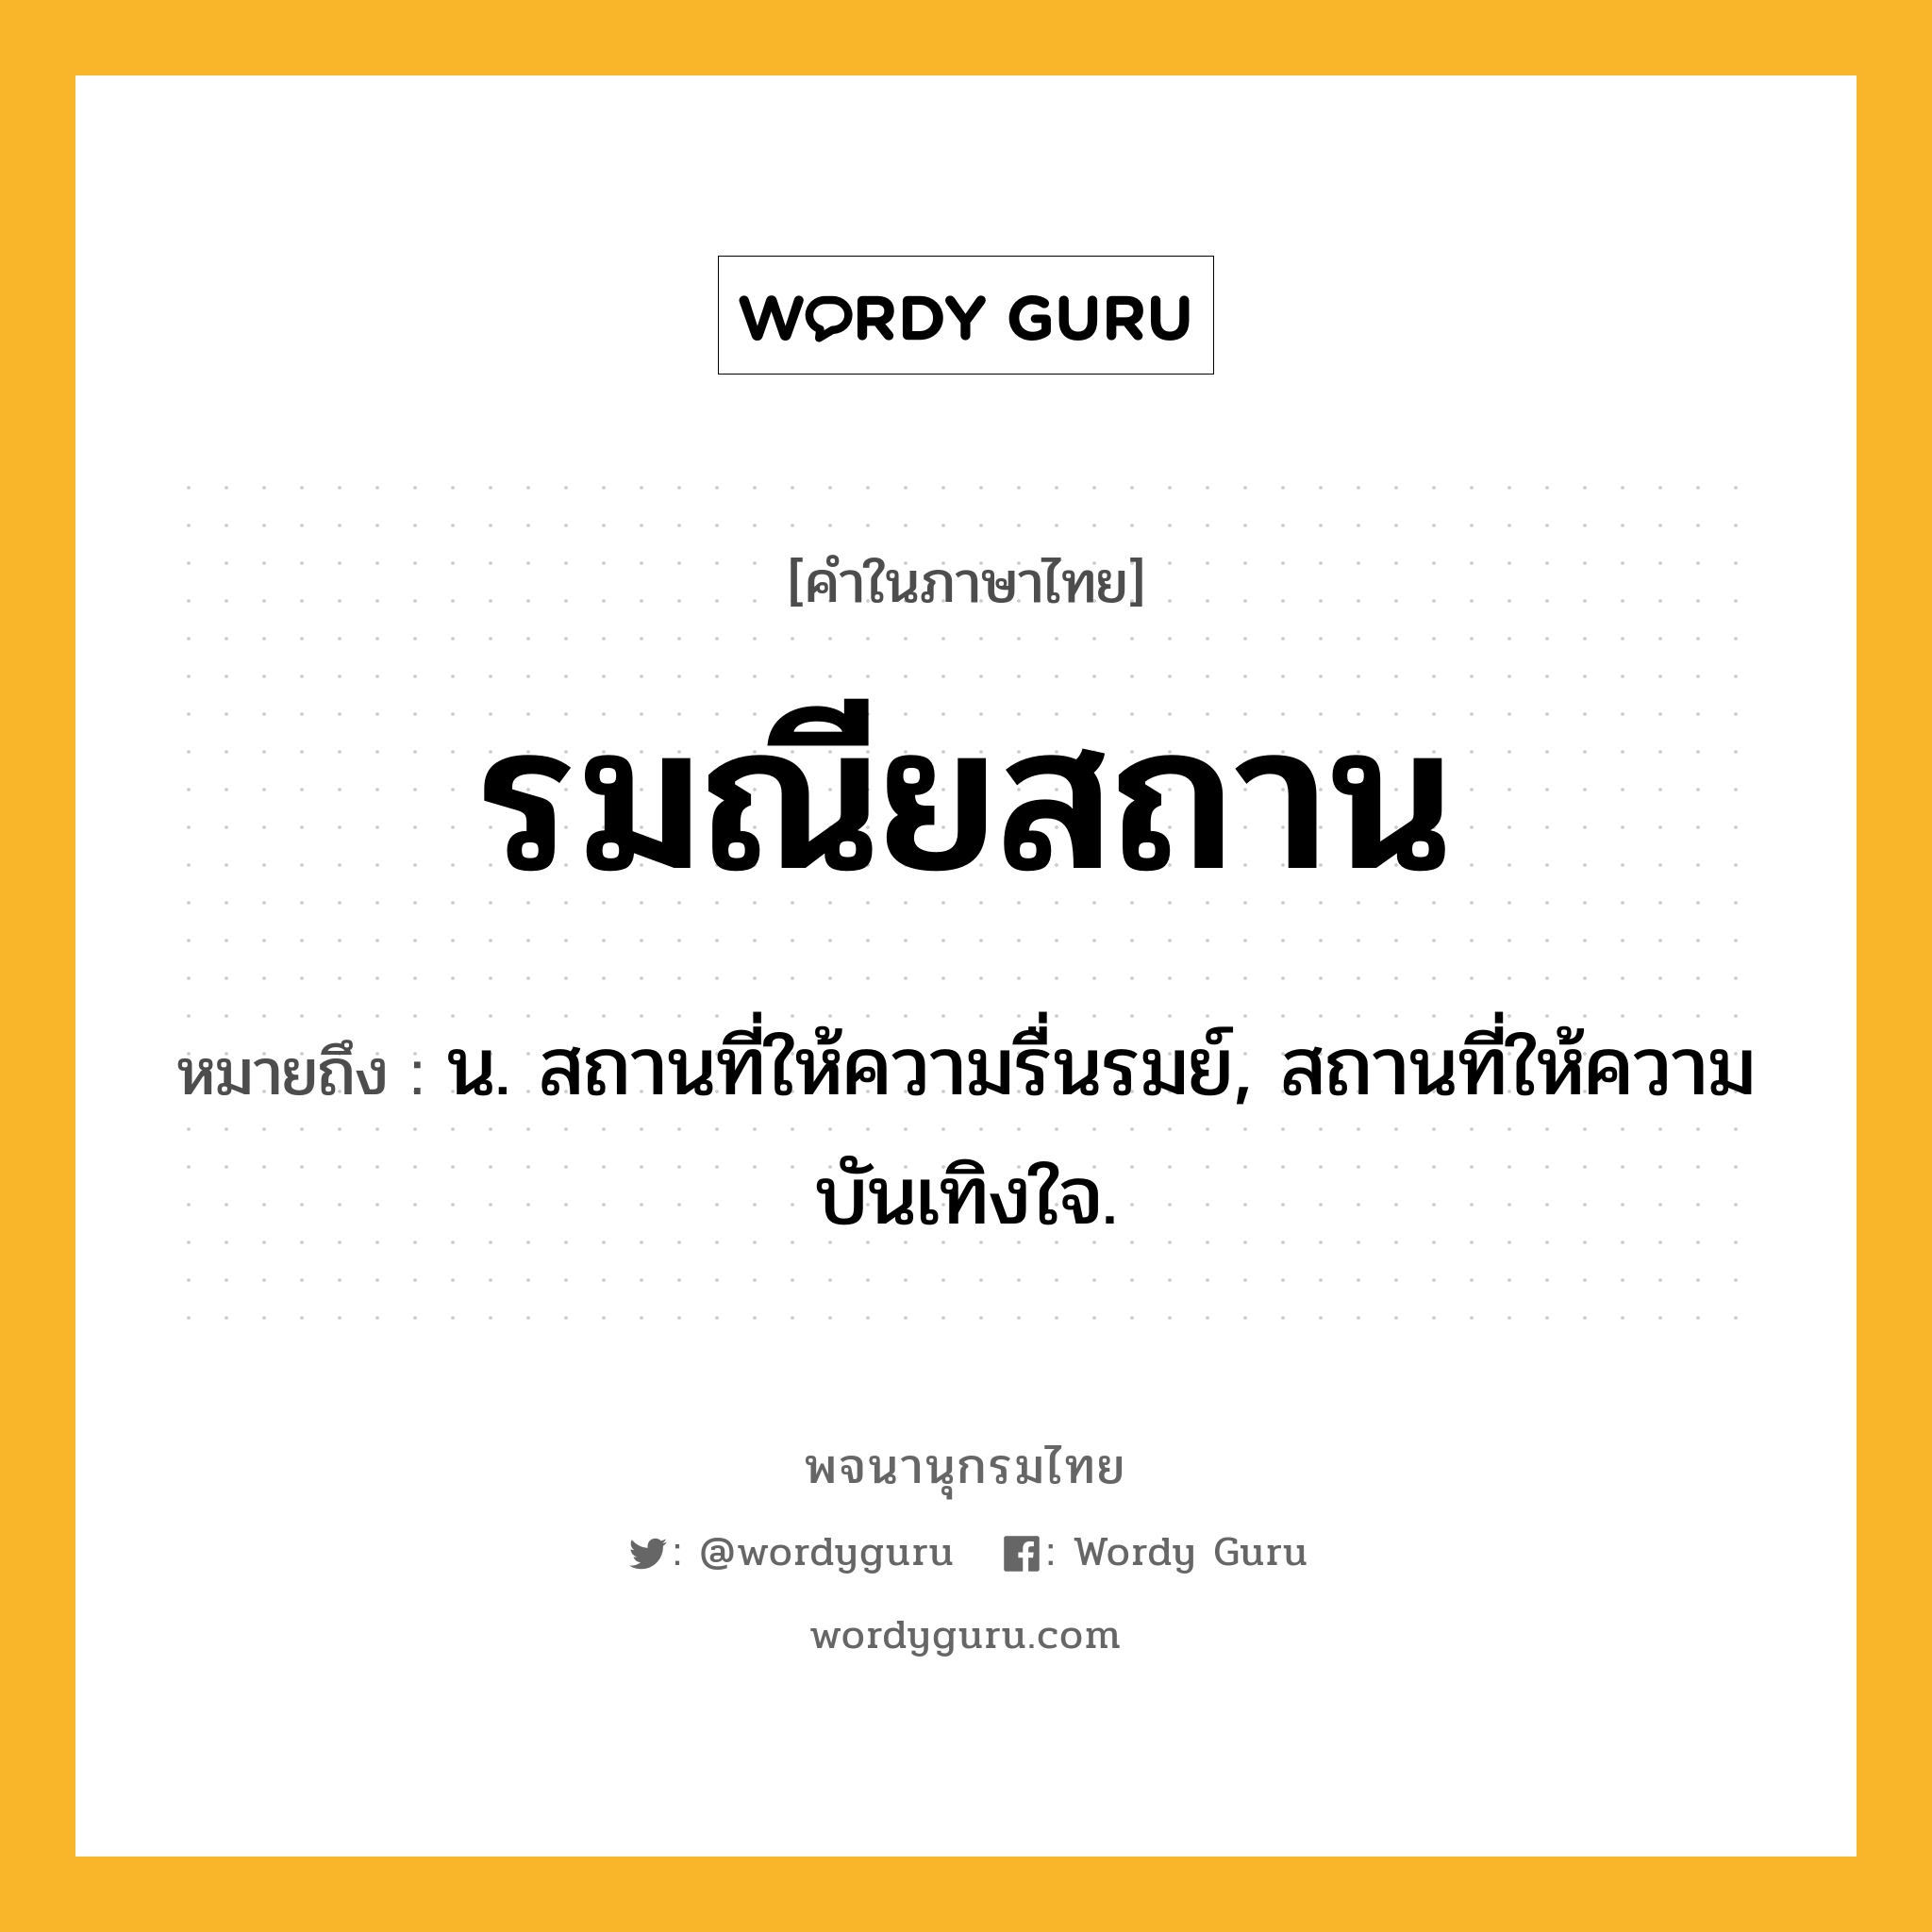 รมณียสถาน ความหมาย หมายถึงอะไร?, คำในภาษาไทย รมณียสถาน หมายถึง น. สถานที่ให้ความรื่นรมย์, สถานที่ให้ความบันเทิงใจ.